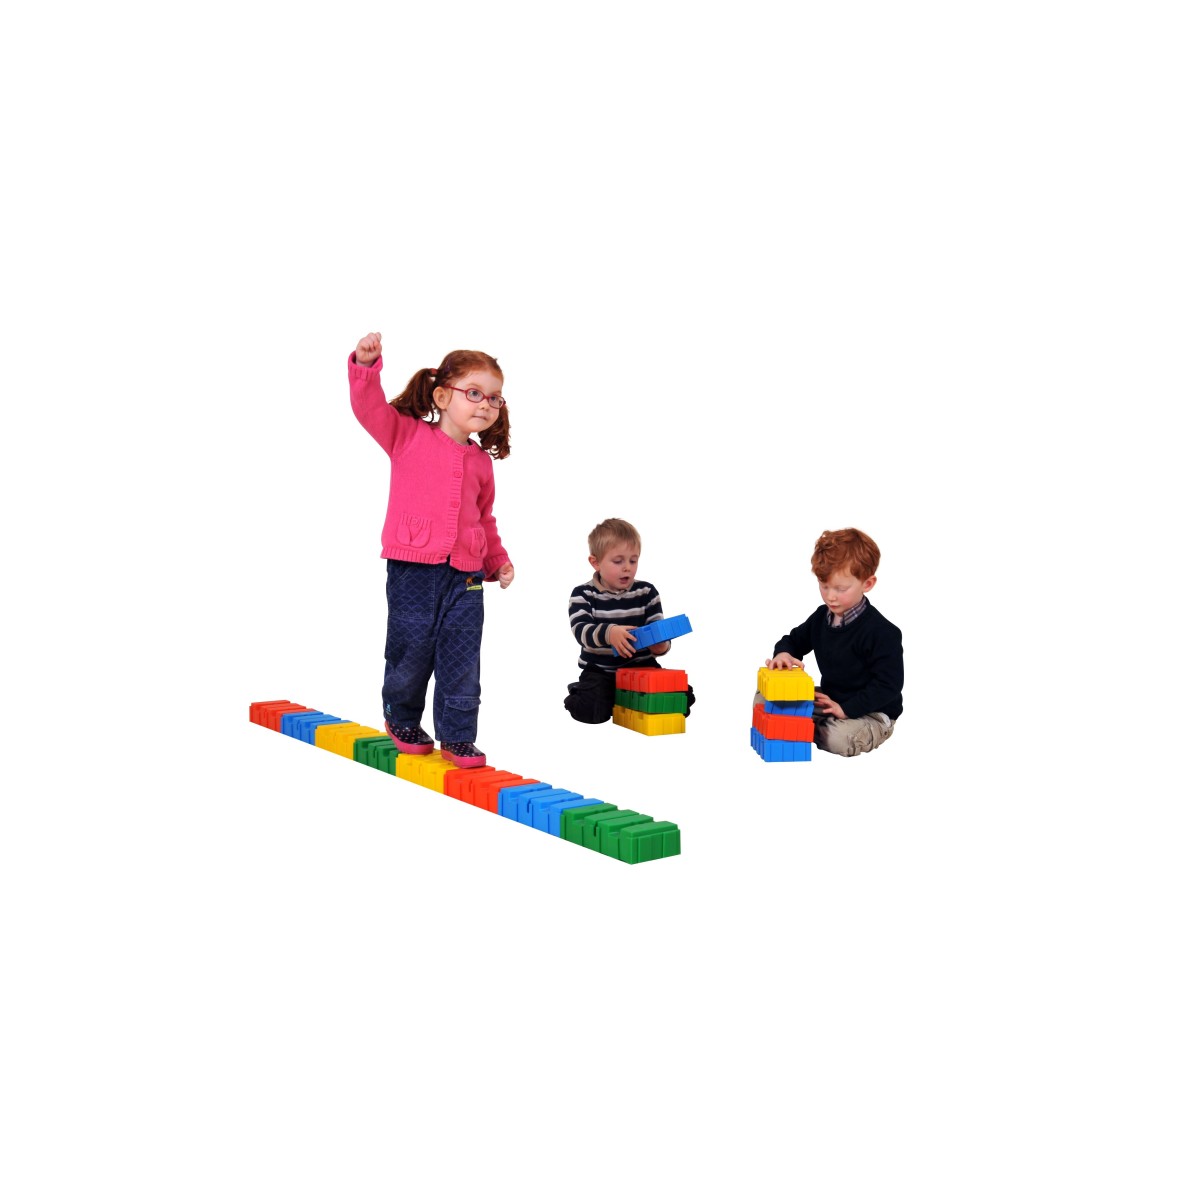 Briques de motricité - 1 - Briques de motricité pour les activités d'équilibre et de psychomotricité des enfants.
Cet ensemble 